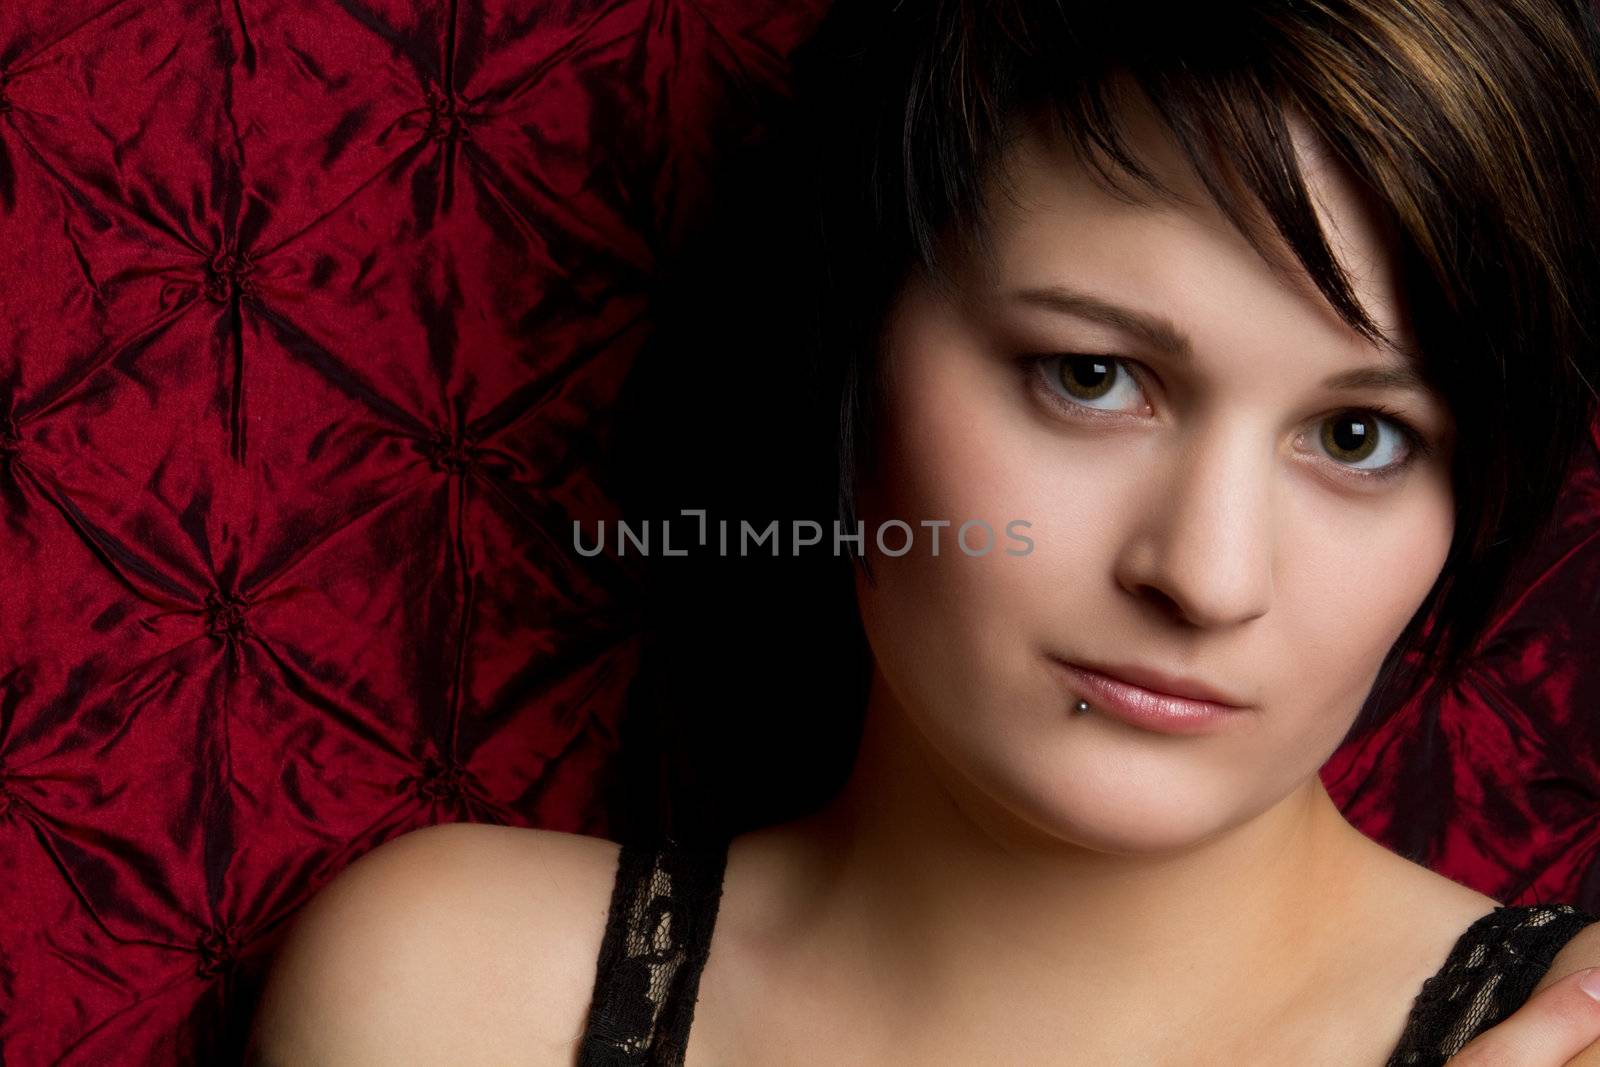 Beautiful young woman closeup portrait